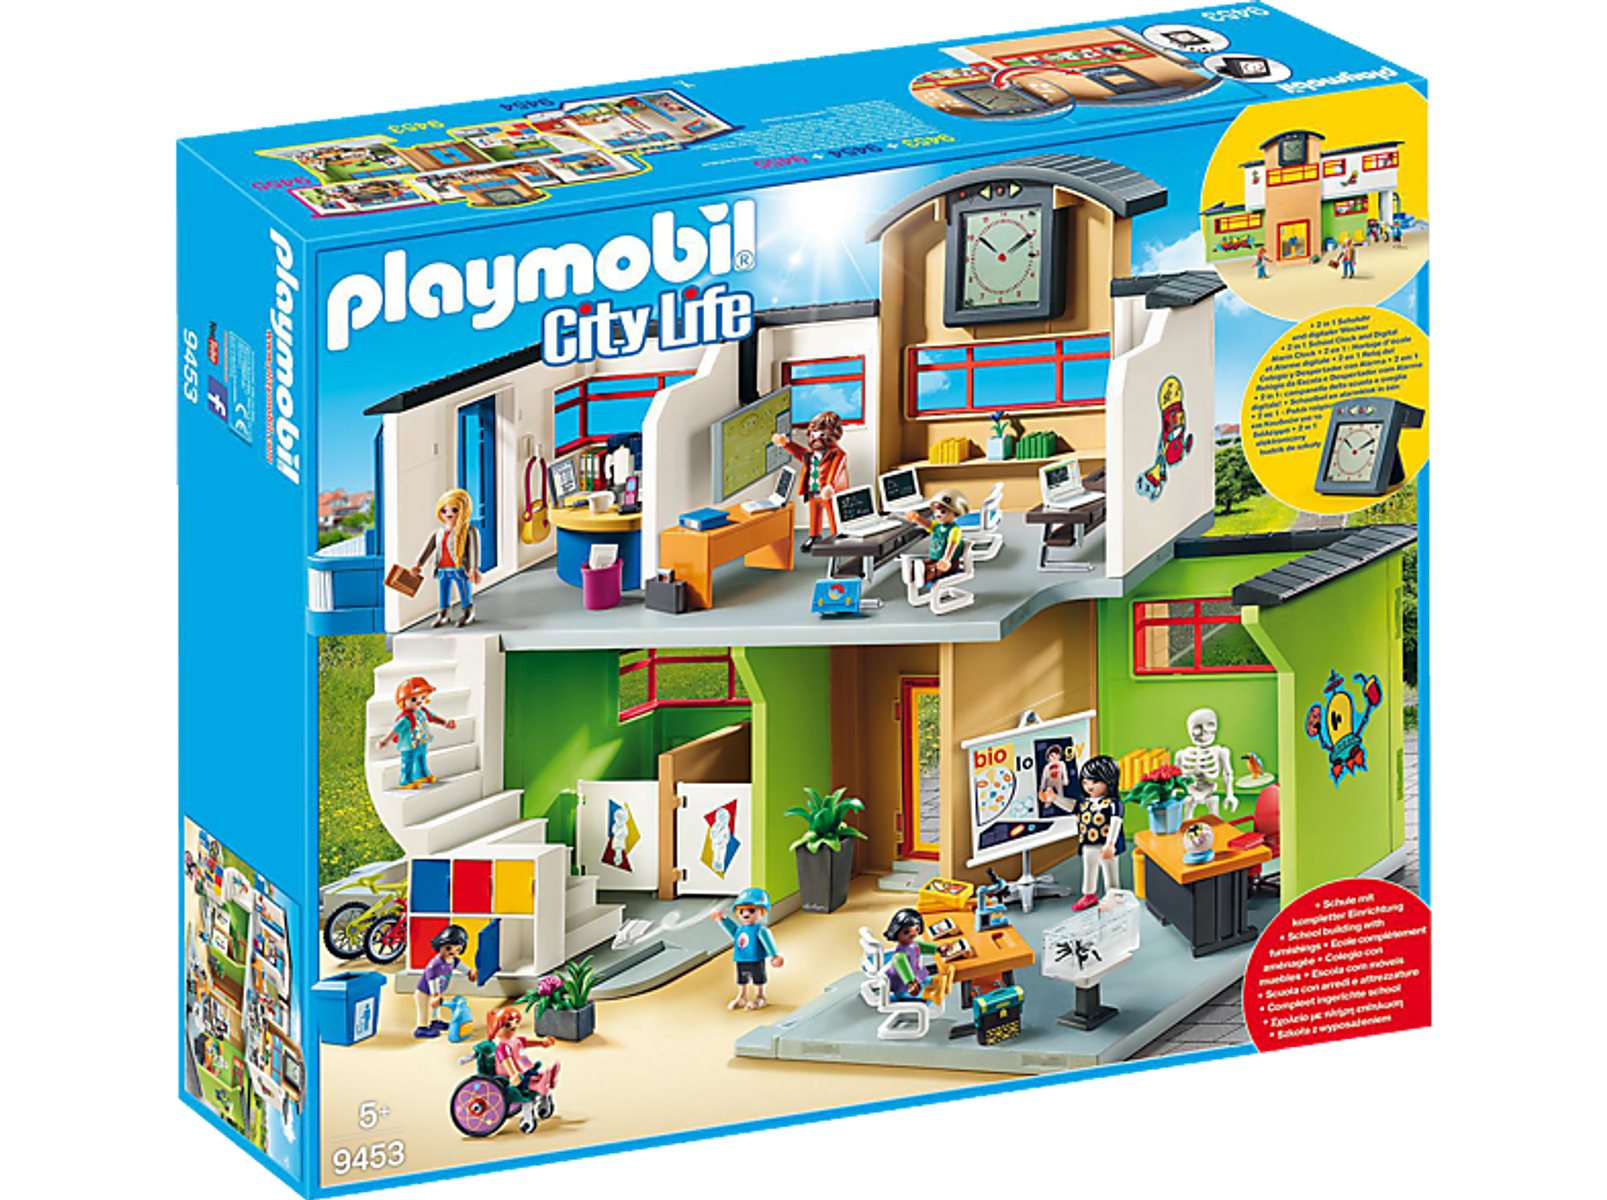 PLAYMOBIL Colegio City 9453 Spielzeugsets Life